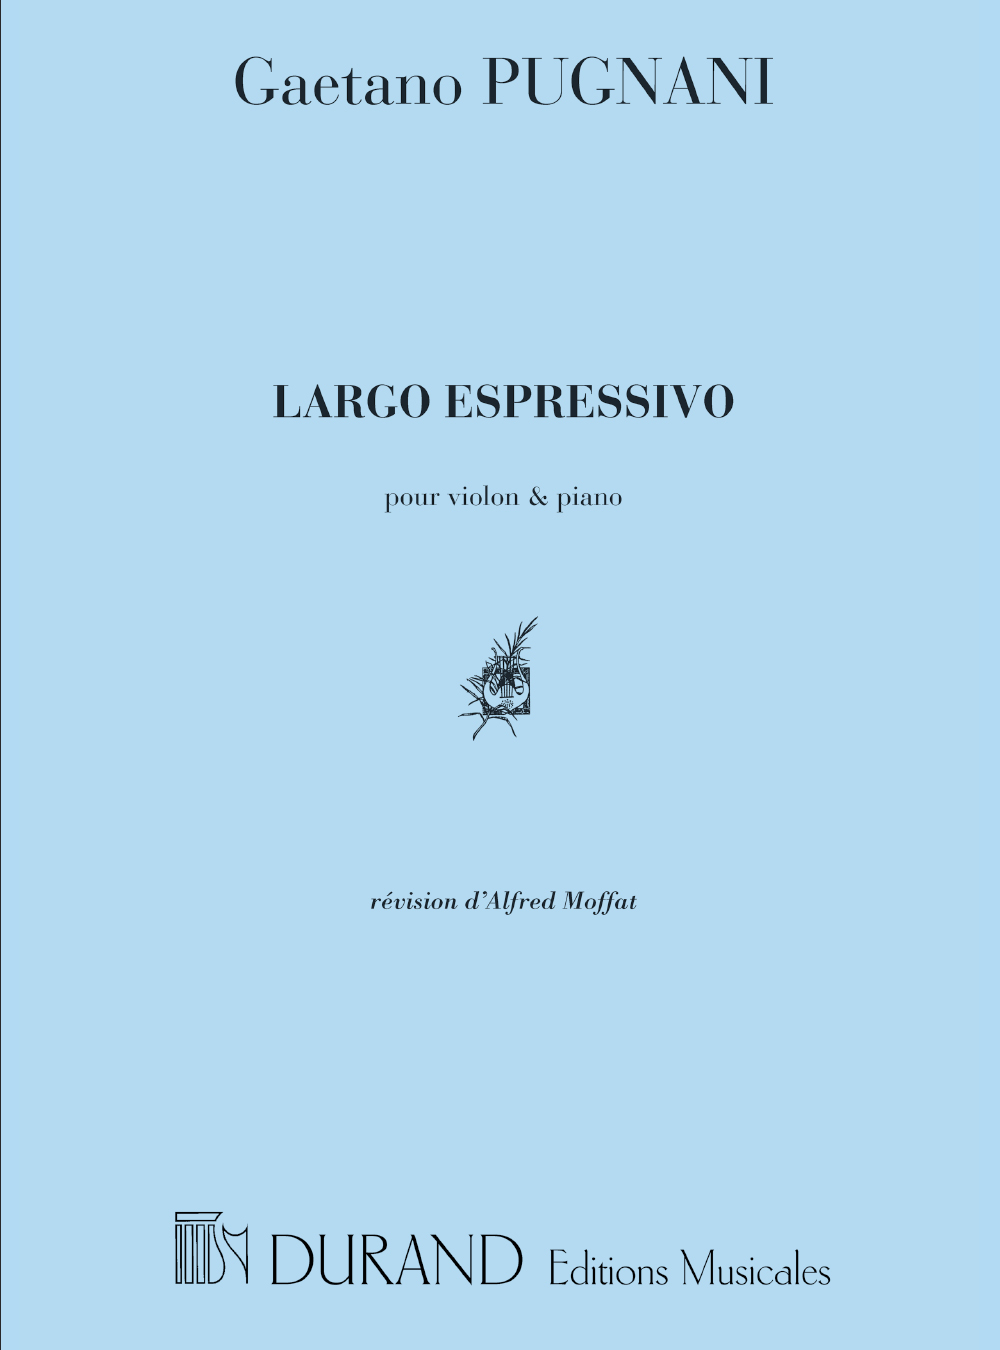 Gaetano Pugnani: Largo Espressivo  Pour Violon Et Piano: Violin